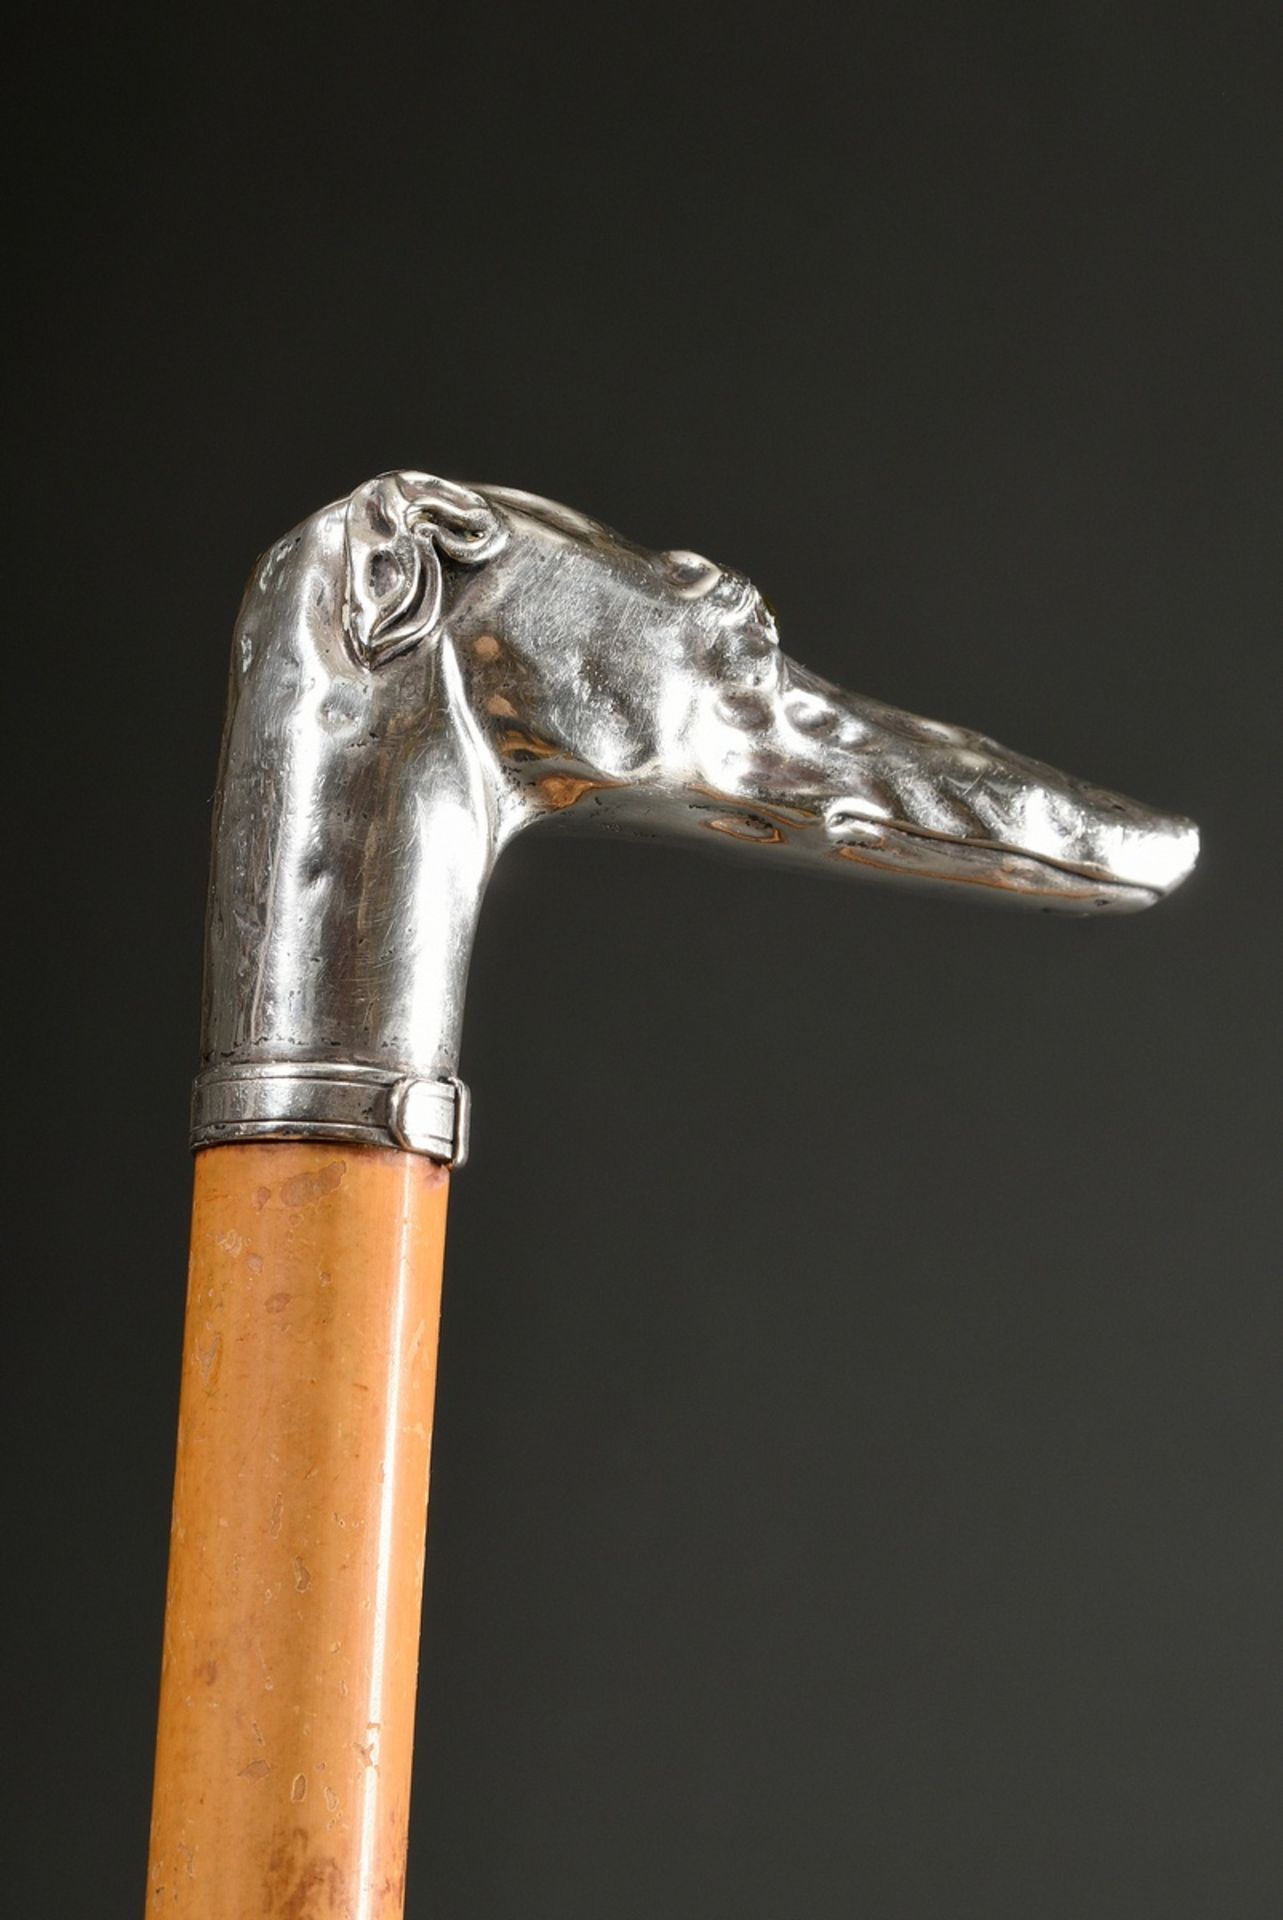 Gehstock mit plastischer Krücke "Windhundkopf", Silber mit Glasaugen, Schuss aus Palmrohr, um 1900, - Bild 3 aus 6